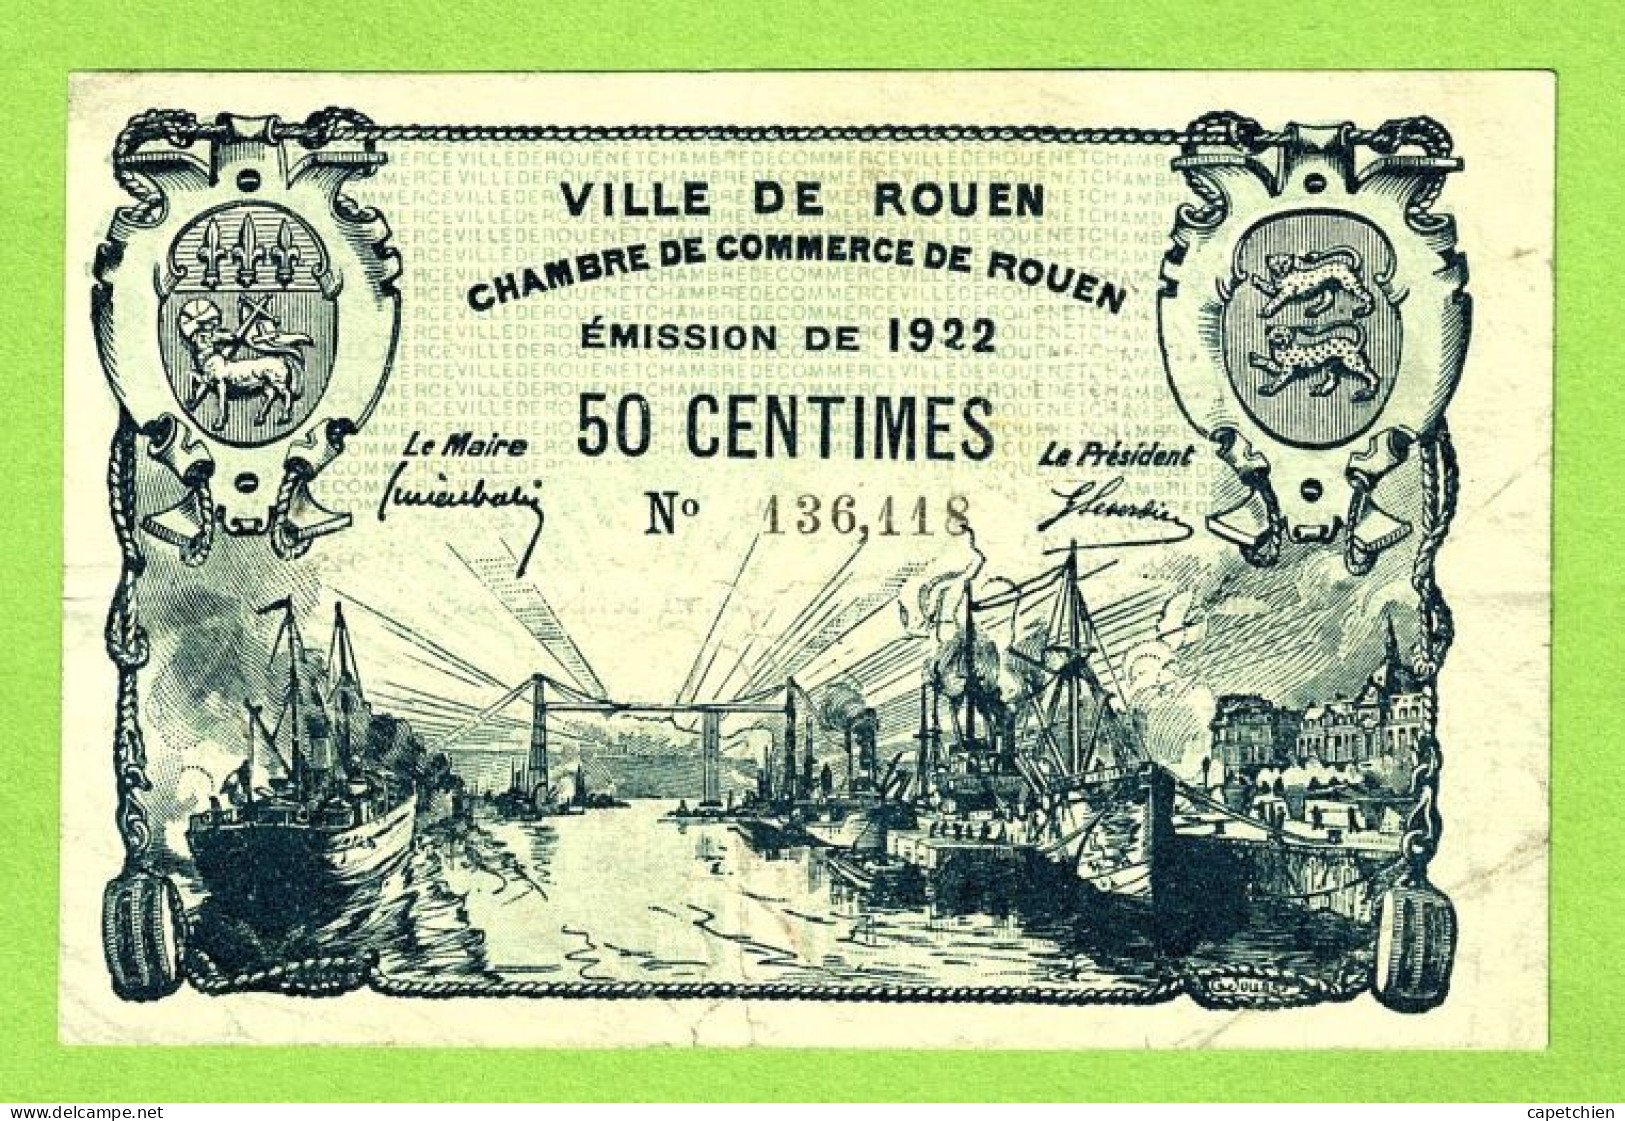 FRANCE / VILLE & CHAMBRE De COMMERCE De ROUEN / 50 CENTIMES  / EMISSION DE 1922 /  / N° 136611 - Chambre De Commerce